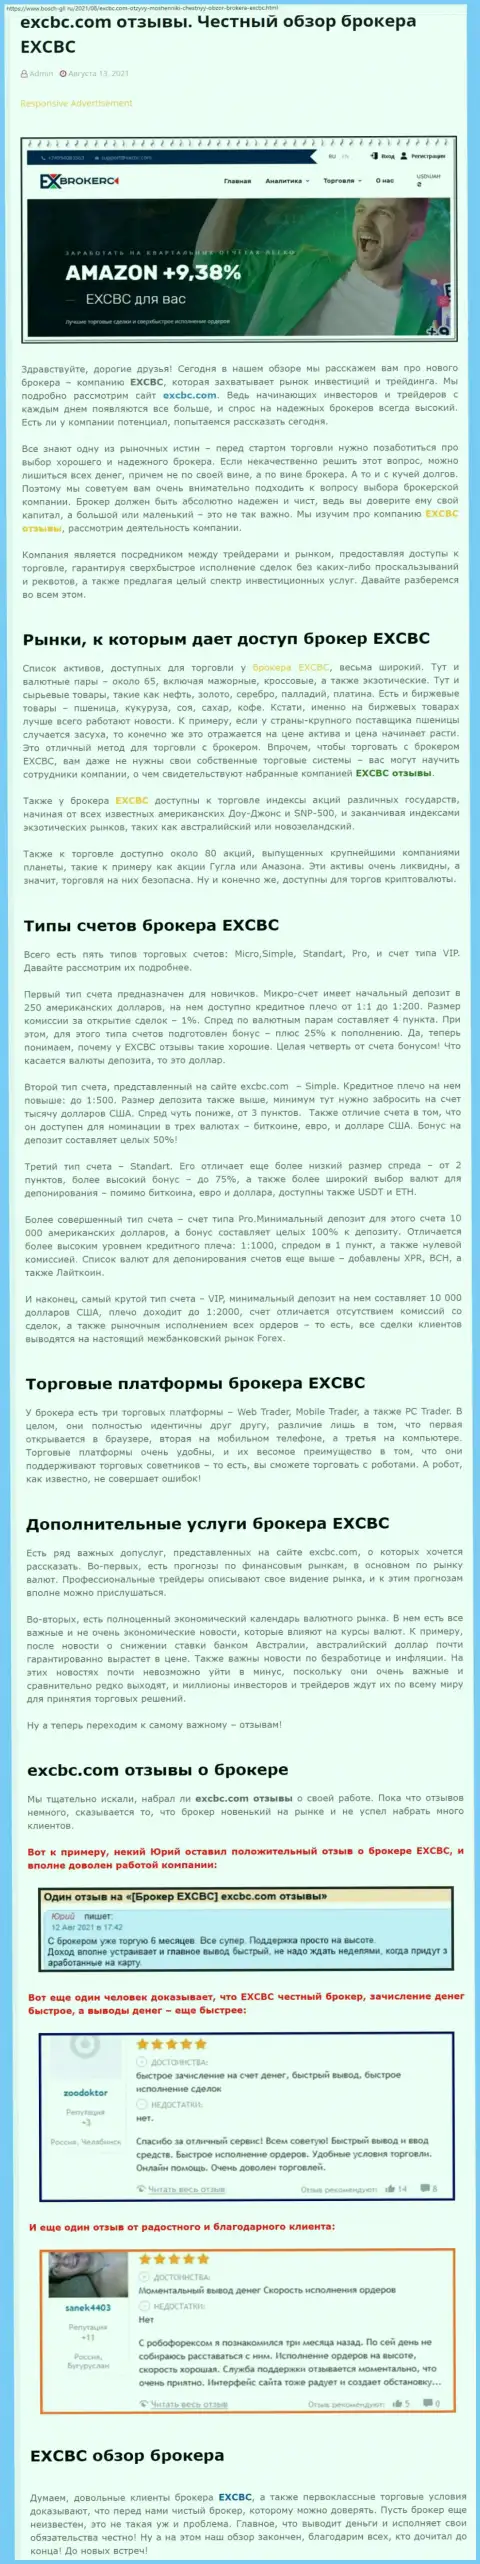 Информационный материал о Форекс-организации EXCBC Сom на сайте Bosch-Gll Ru